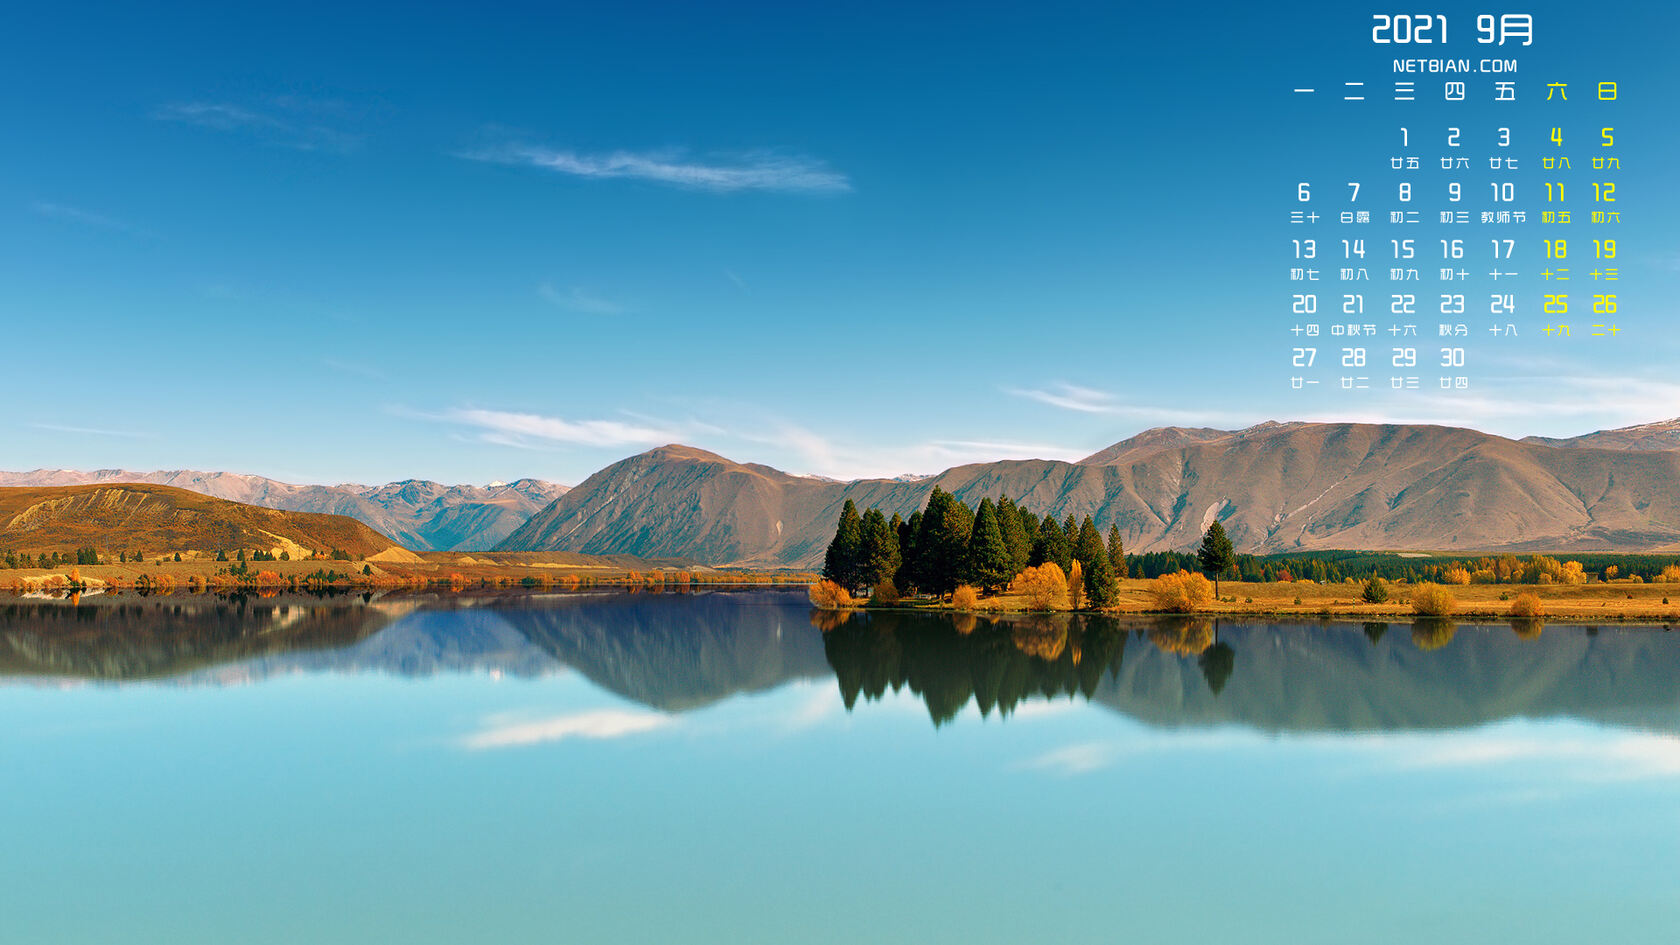 2021年9月日历，如镜面般平静的湖面，山水景色壁纸日历图片第1张图片